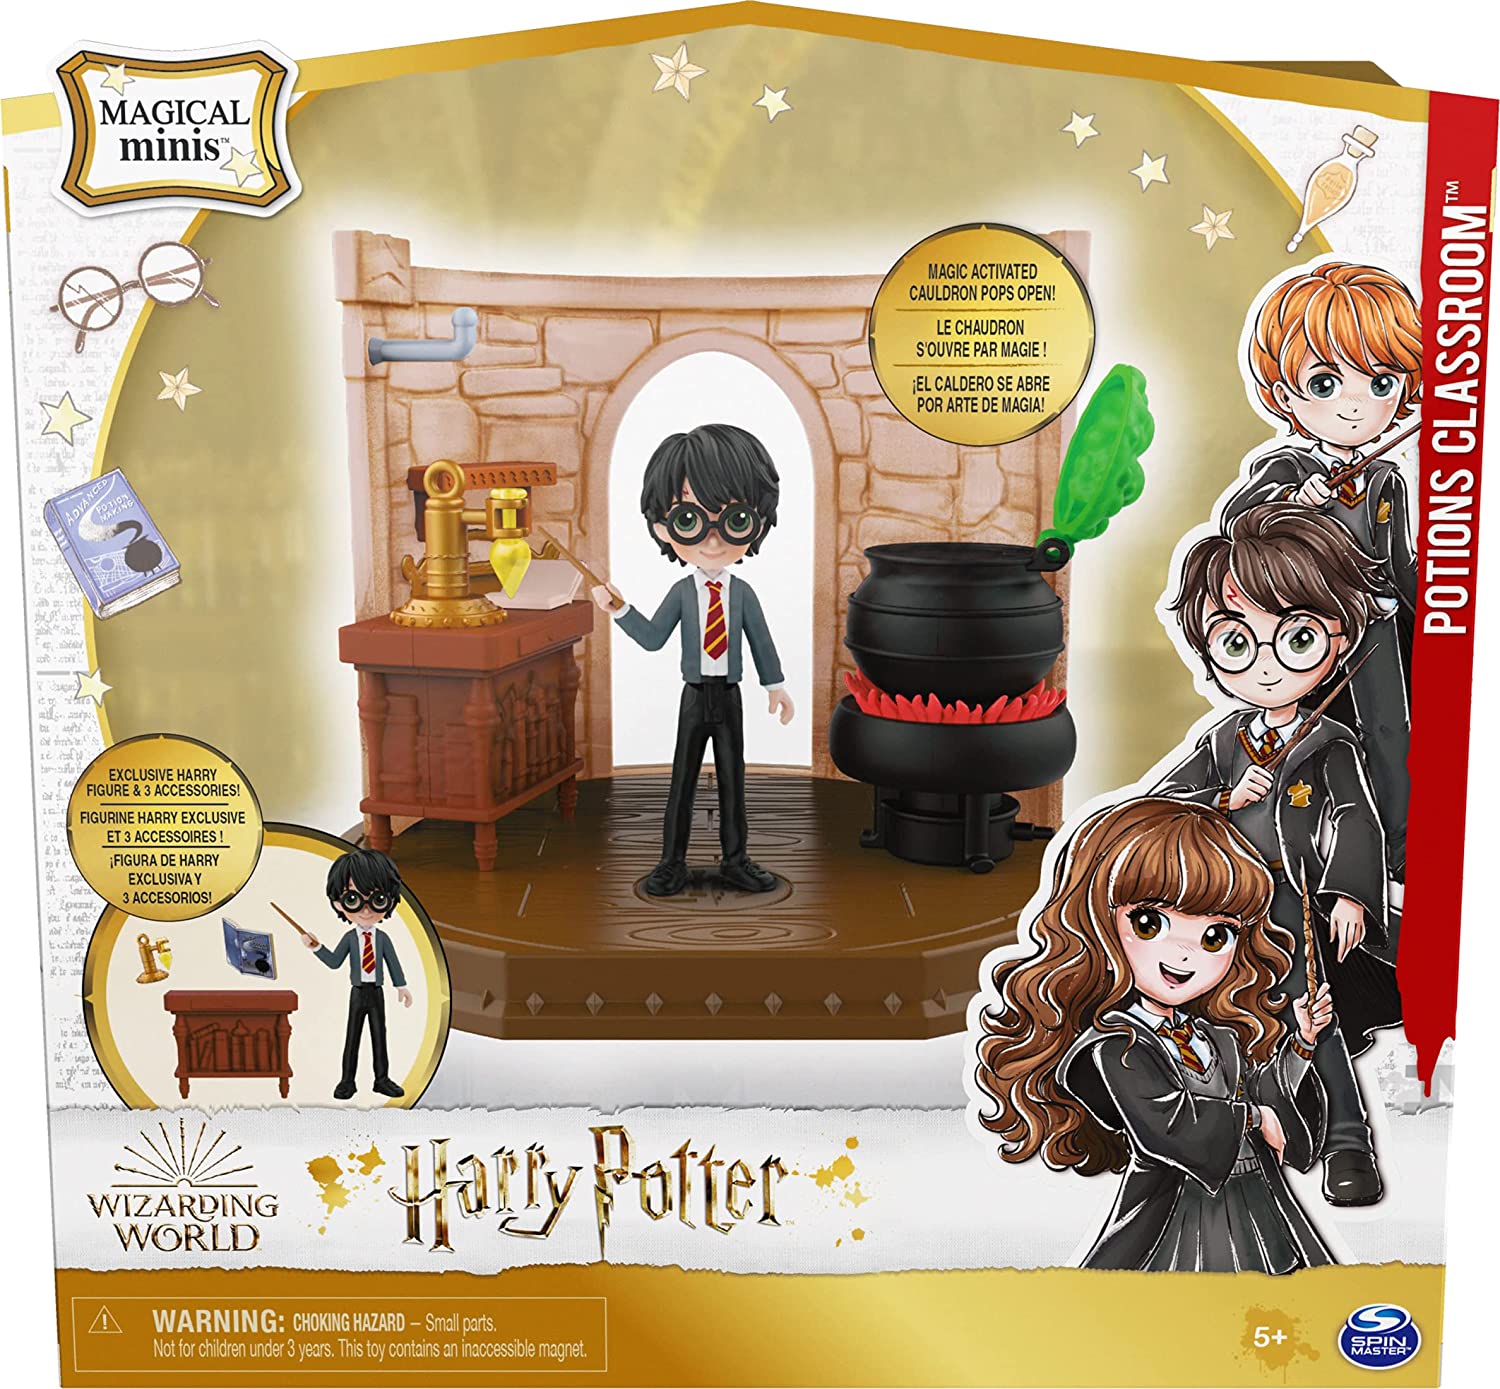 Compre Kit 4 Harry Potter - Castelo, Salas De Poções, Feitiços, Cuidados  Com Criaturas Mágicas, Adivinhação aqui na Sunny Brinquedos.